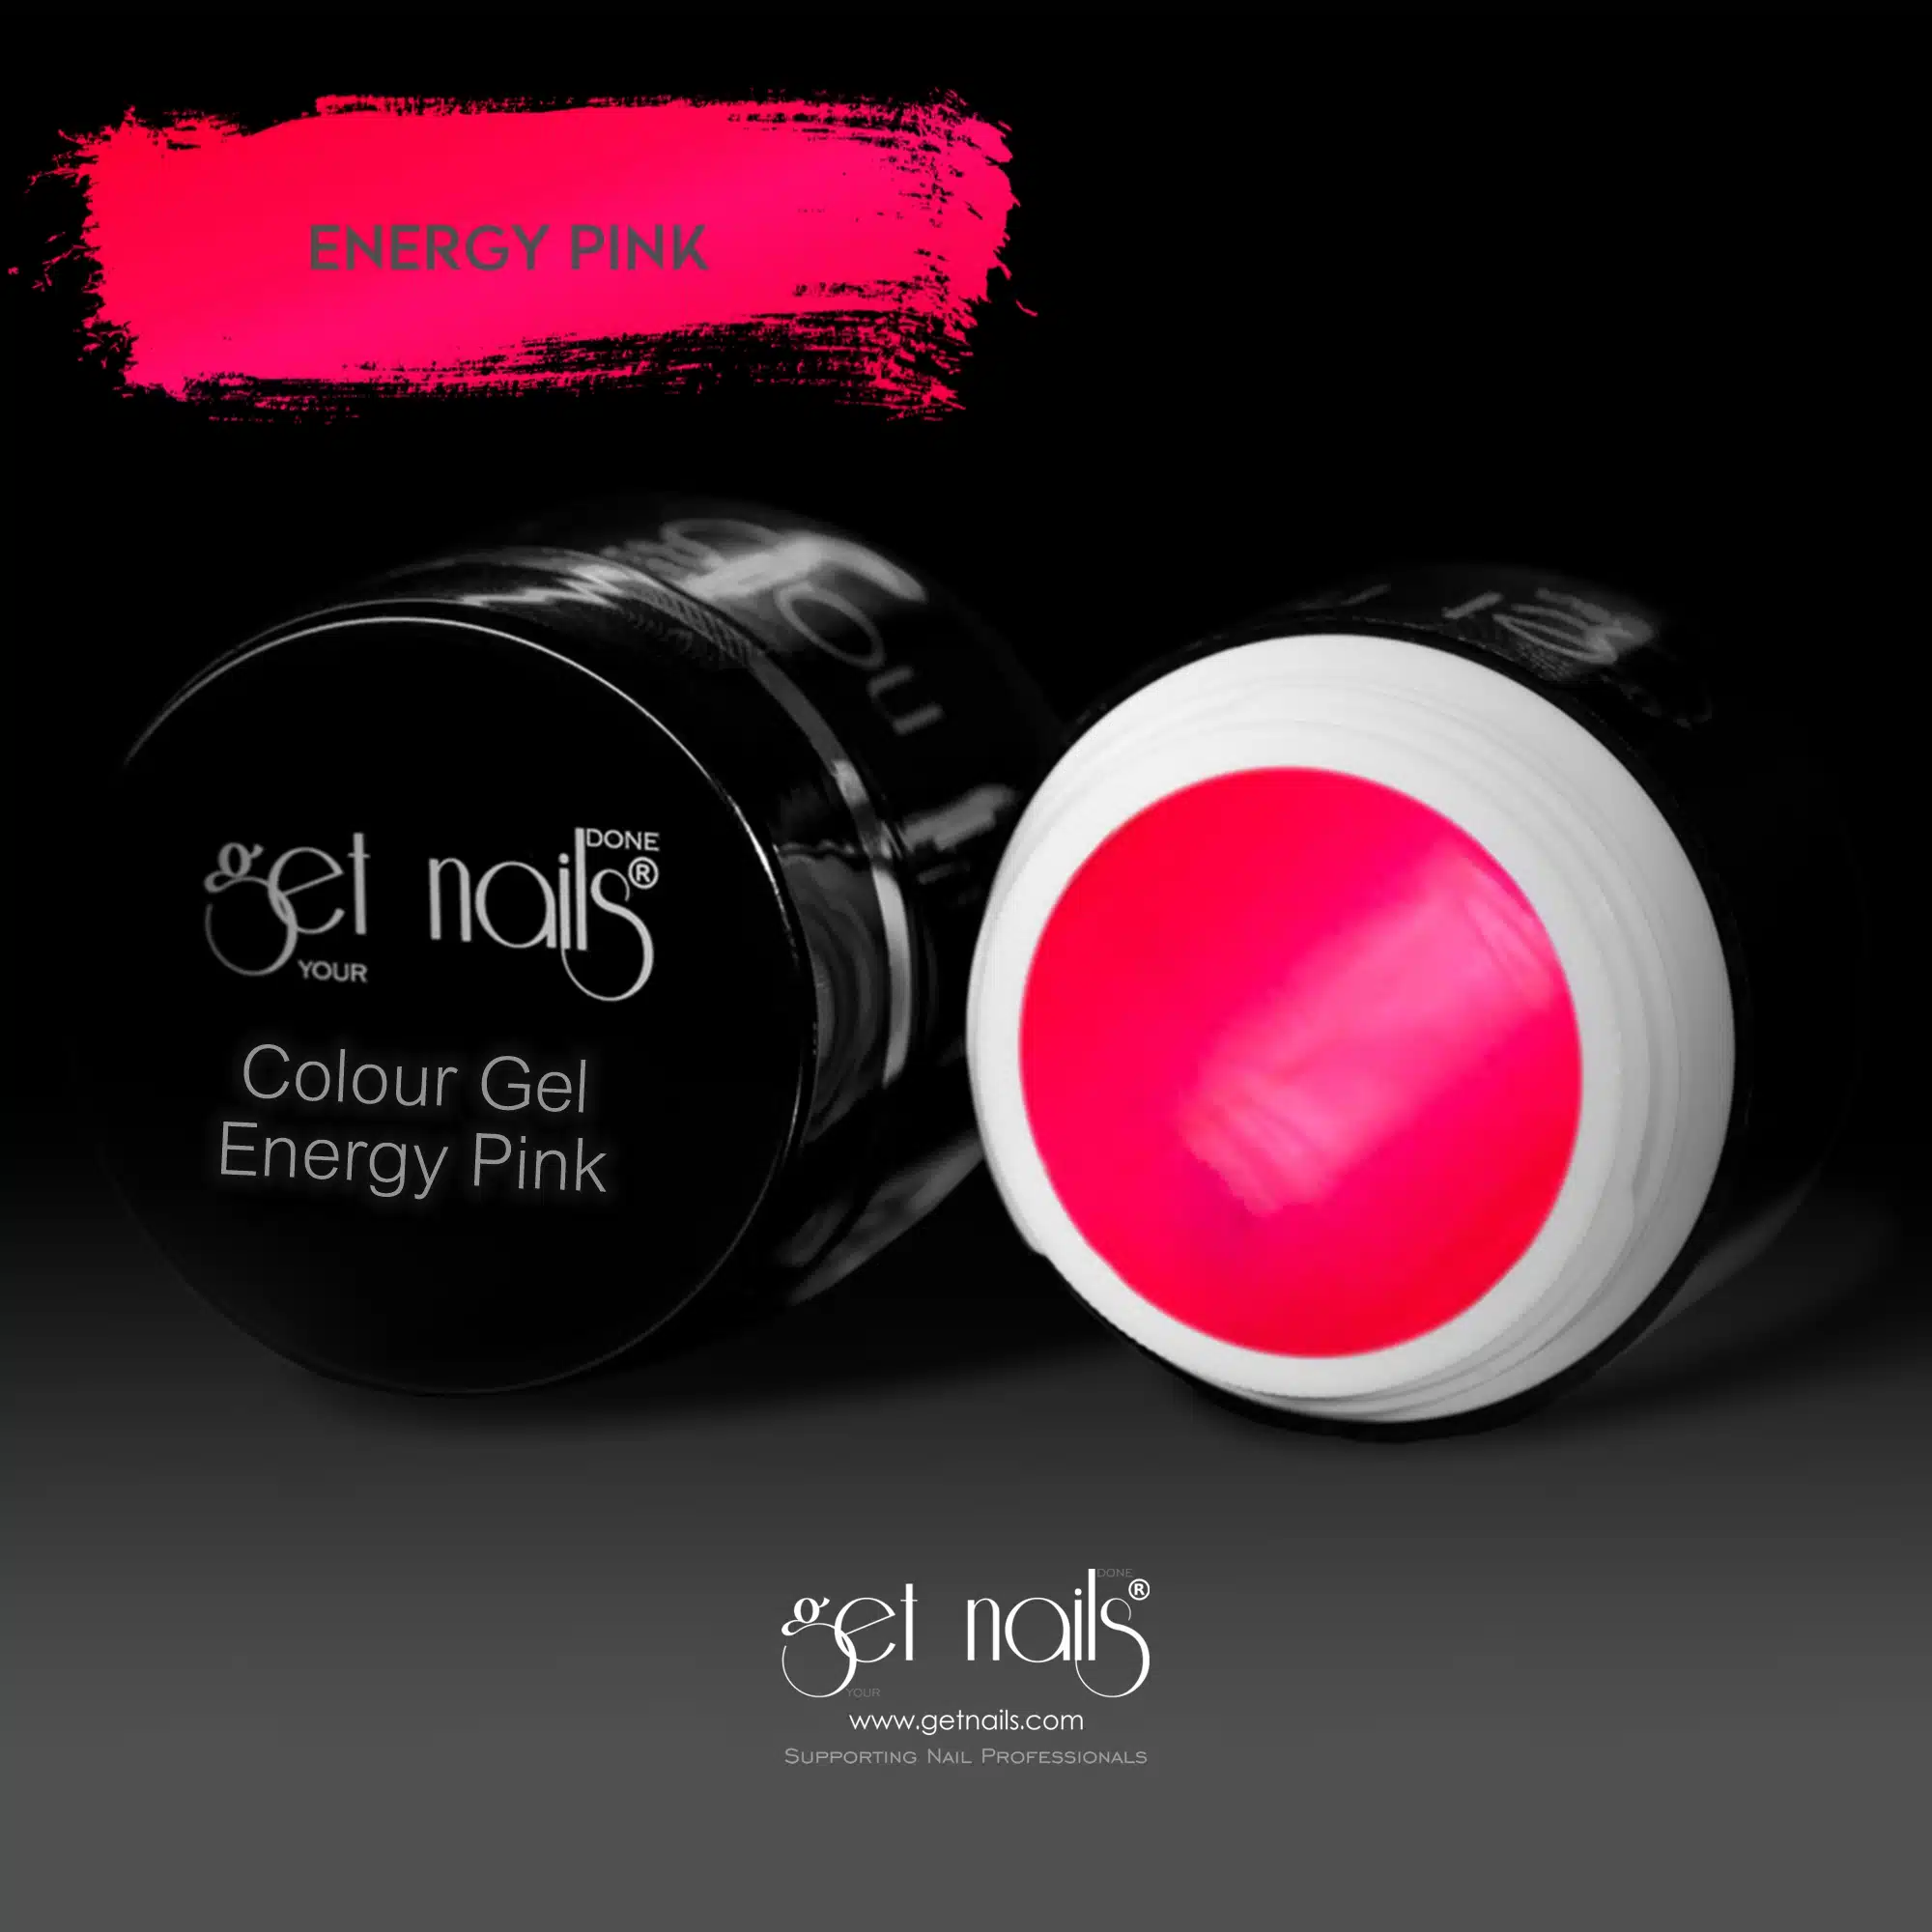 Get Nails Austria - Colour Gel Energy Pink 5g